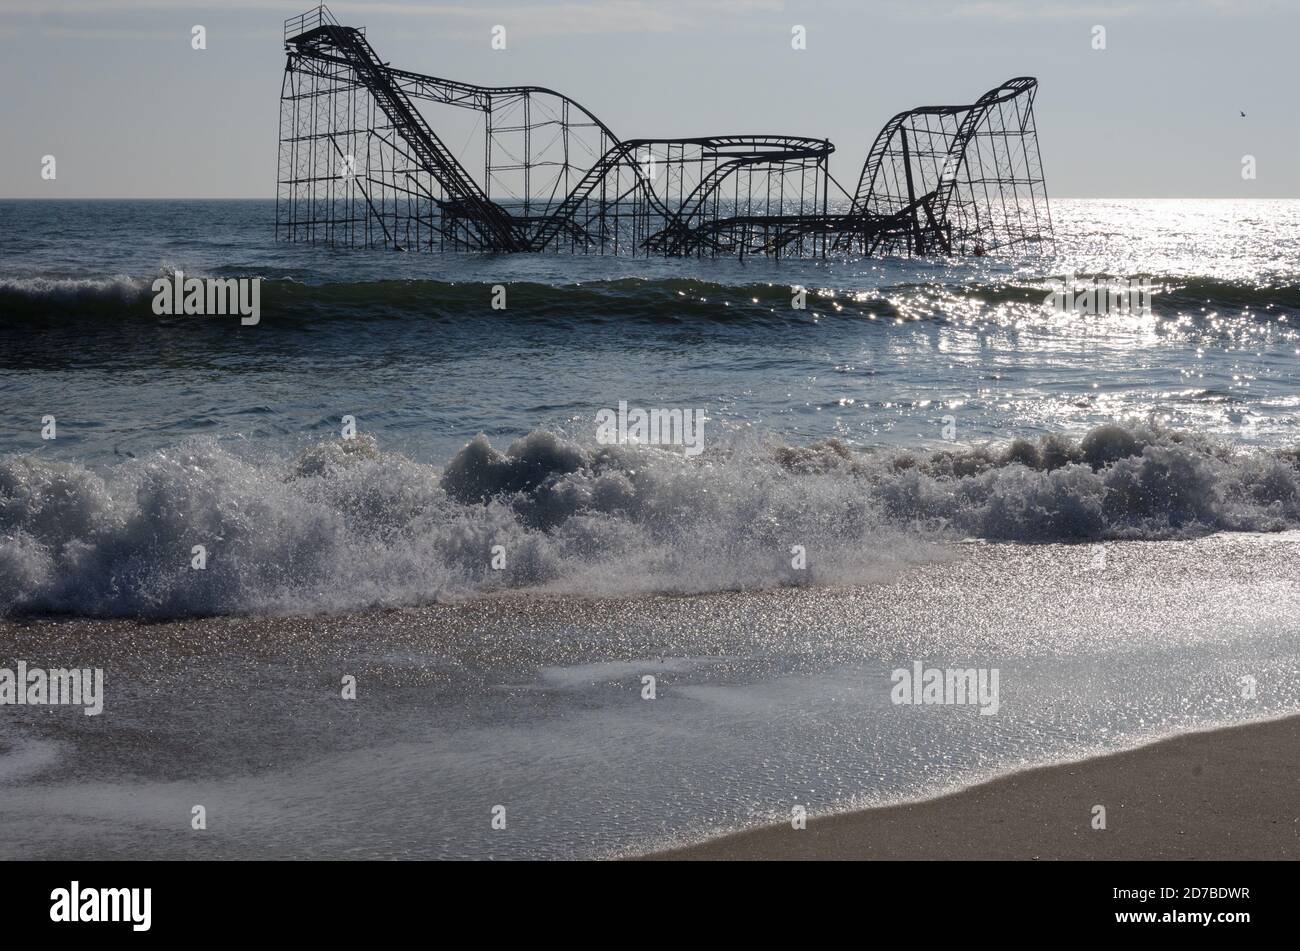 Una montagne russe si trova nell'Oceano Atlantico dopo che un molo è crollato dopo l'uragano Sandy. Colpo di sabbia il 29 ottobre 2012. Foto di Liz Roll Foto Stock